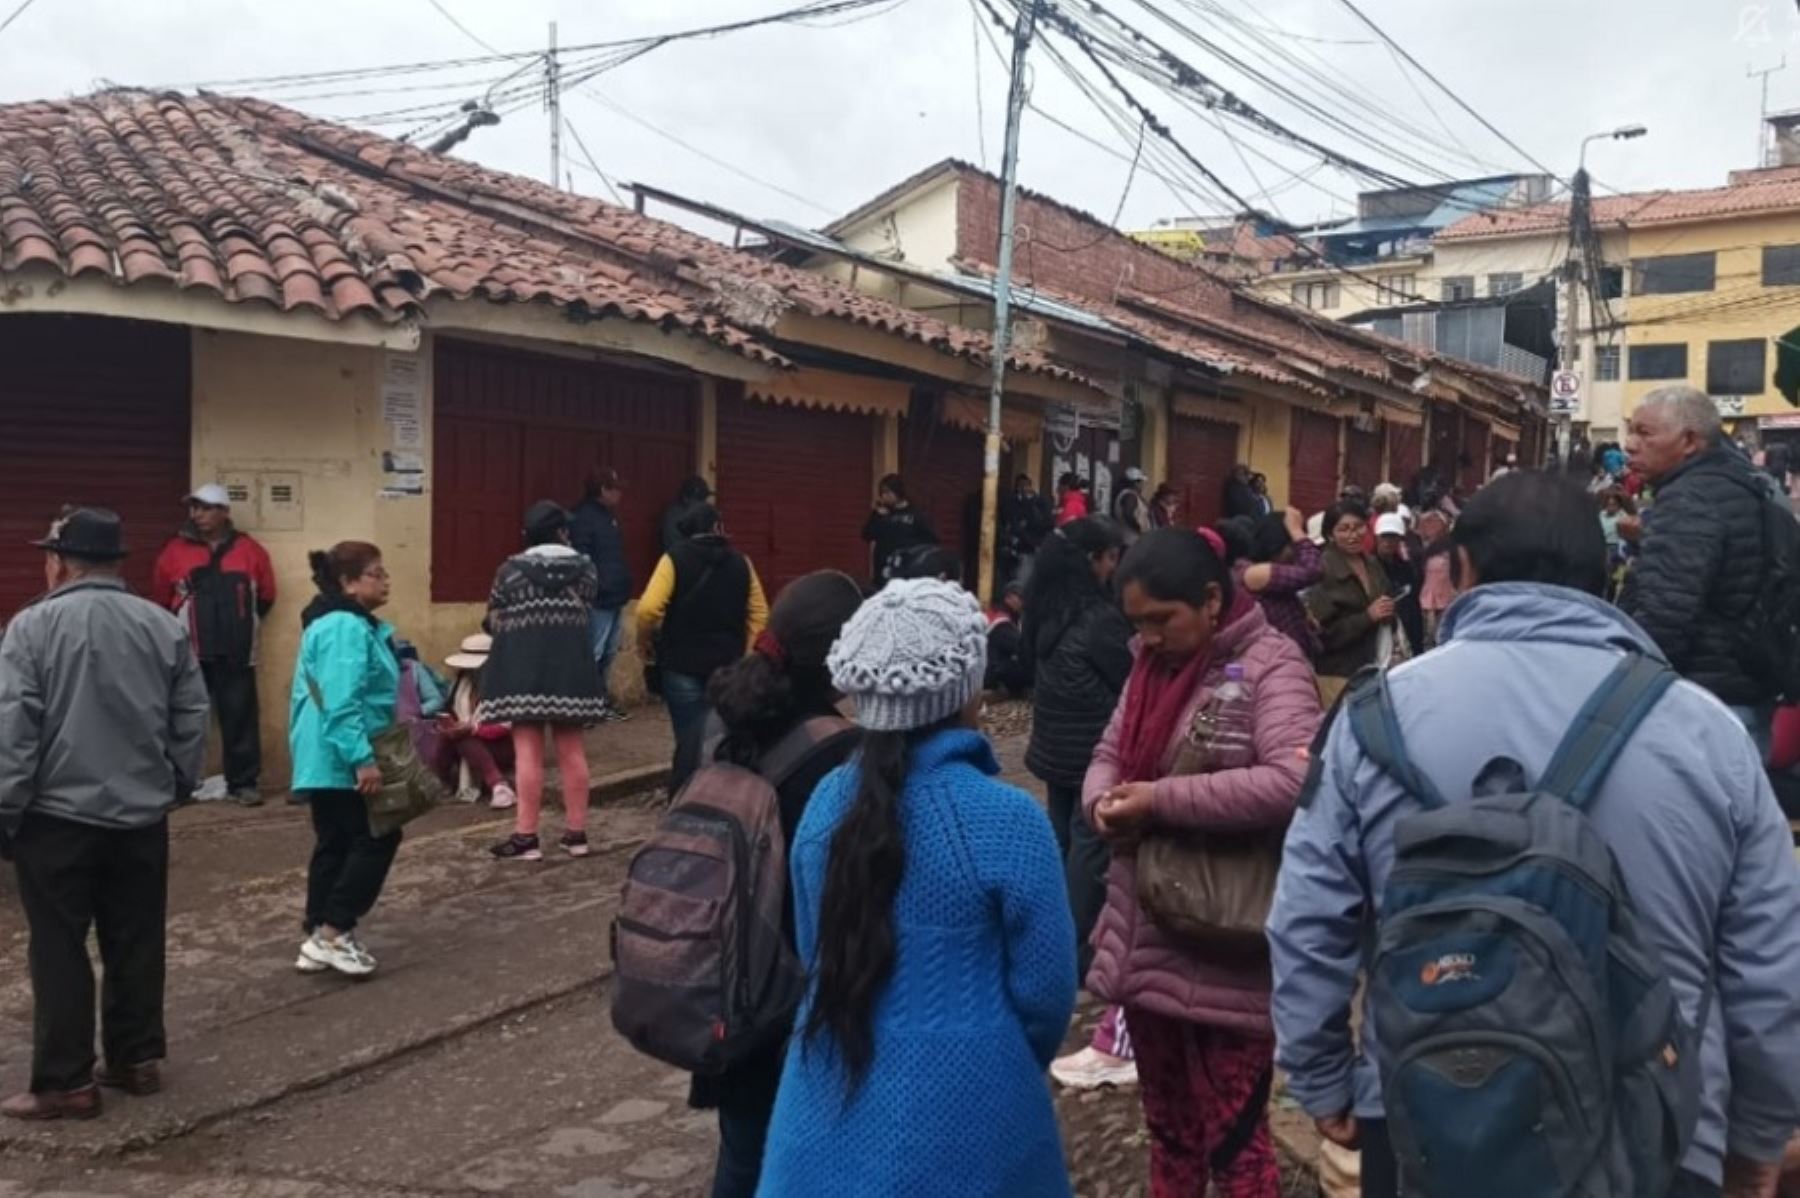 Los administradores del mercado central San Pedro y Cascaparo de Cusco fueron relevados de sus cargos por cerrar arbitrariamente los establecimientos durante el primer día de paralización que acata la sociedad civil, informó el alcalde Luis Pantoja Calvo.